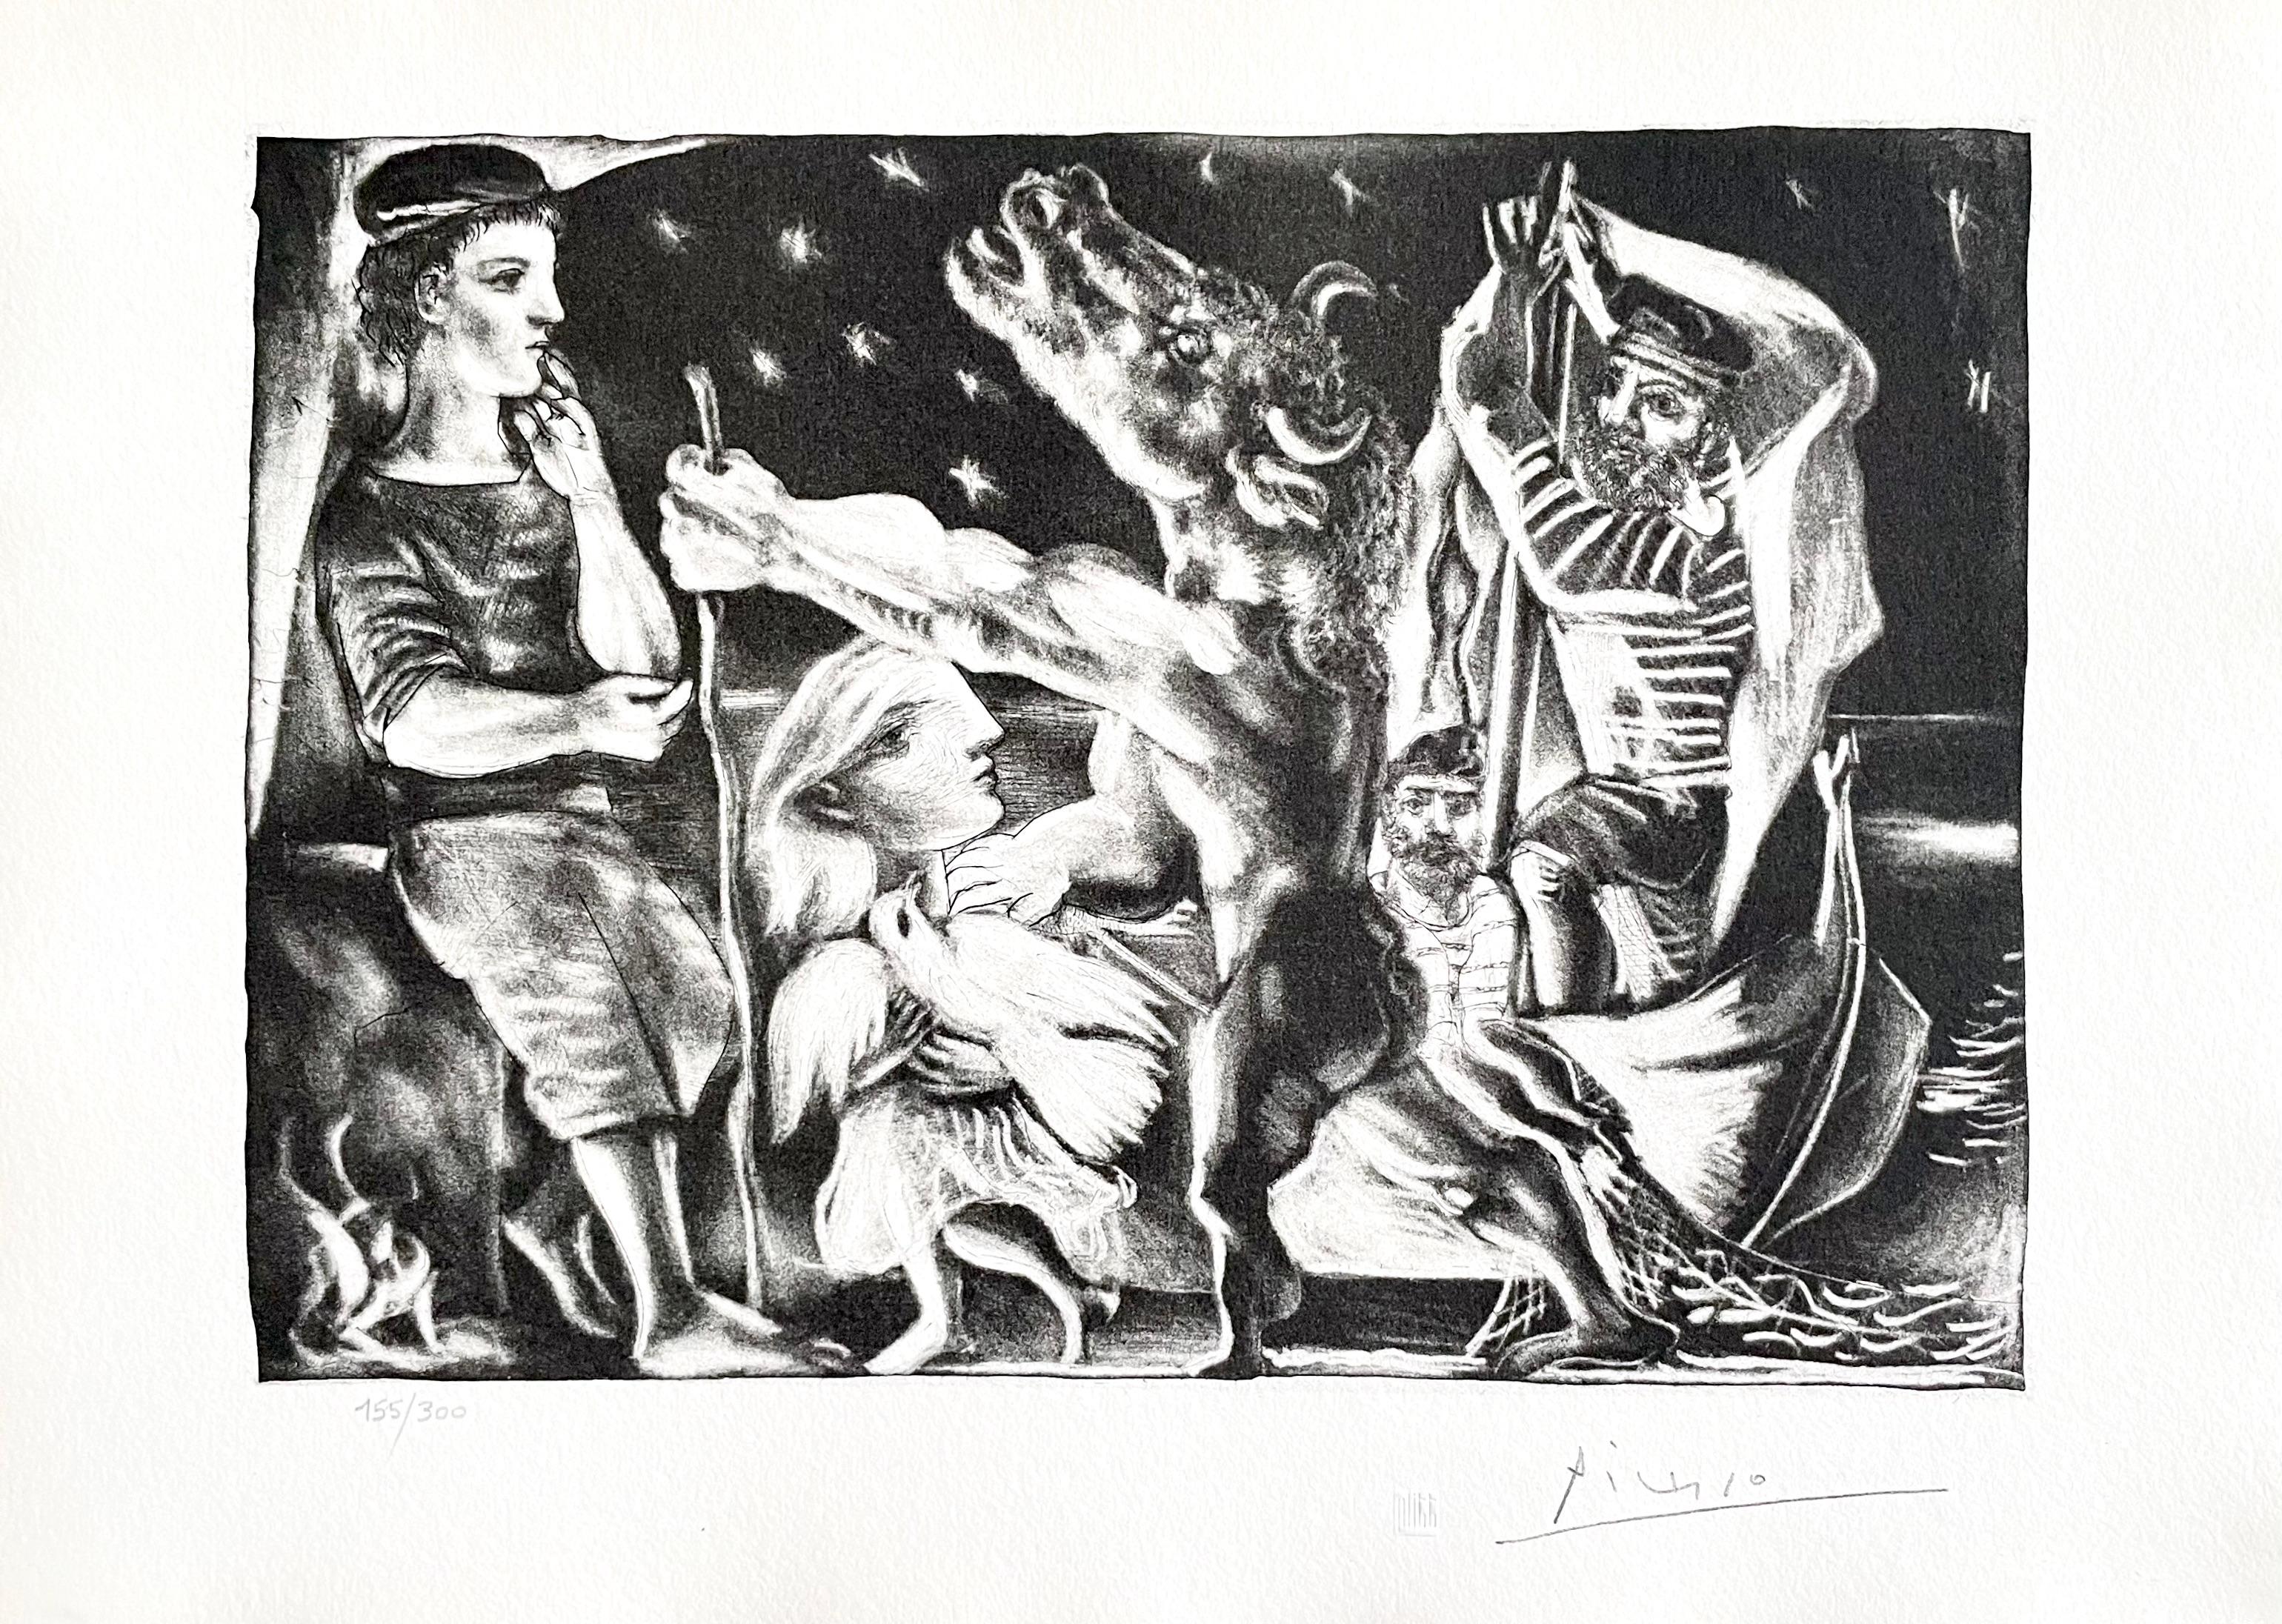 Picasso, Minotaure aveugle guidé par une Fillette dans la Nuit (after) - Print by Pablo Picasso